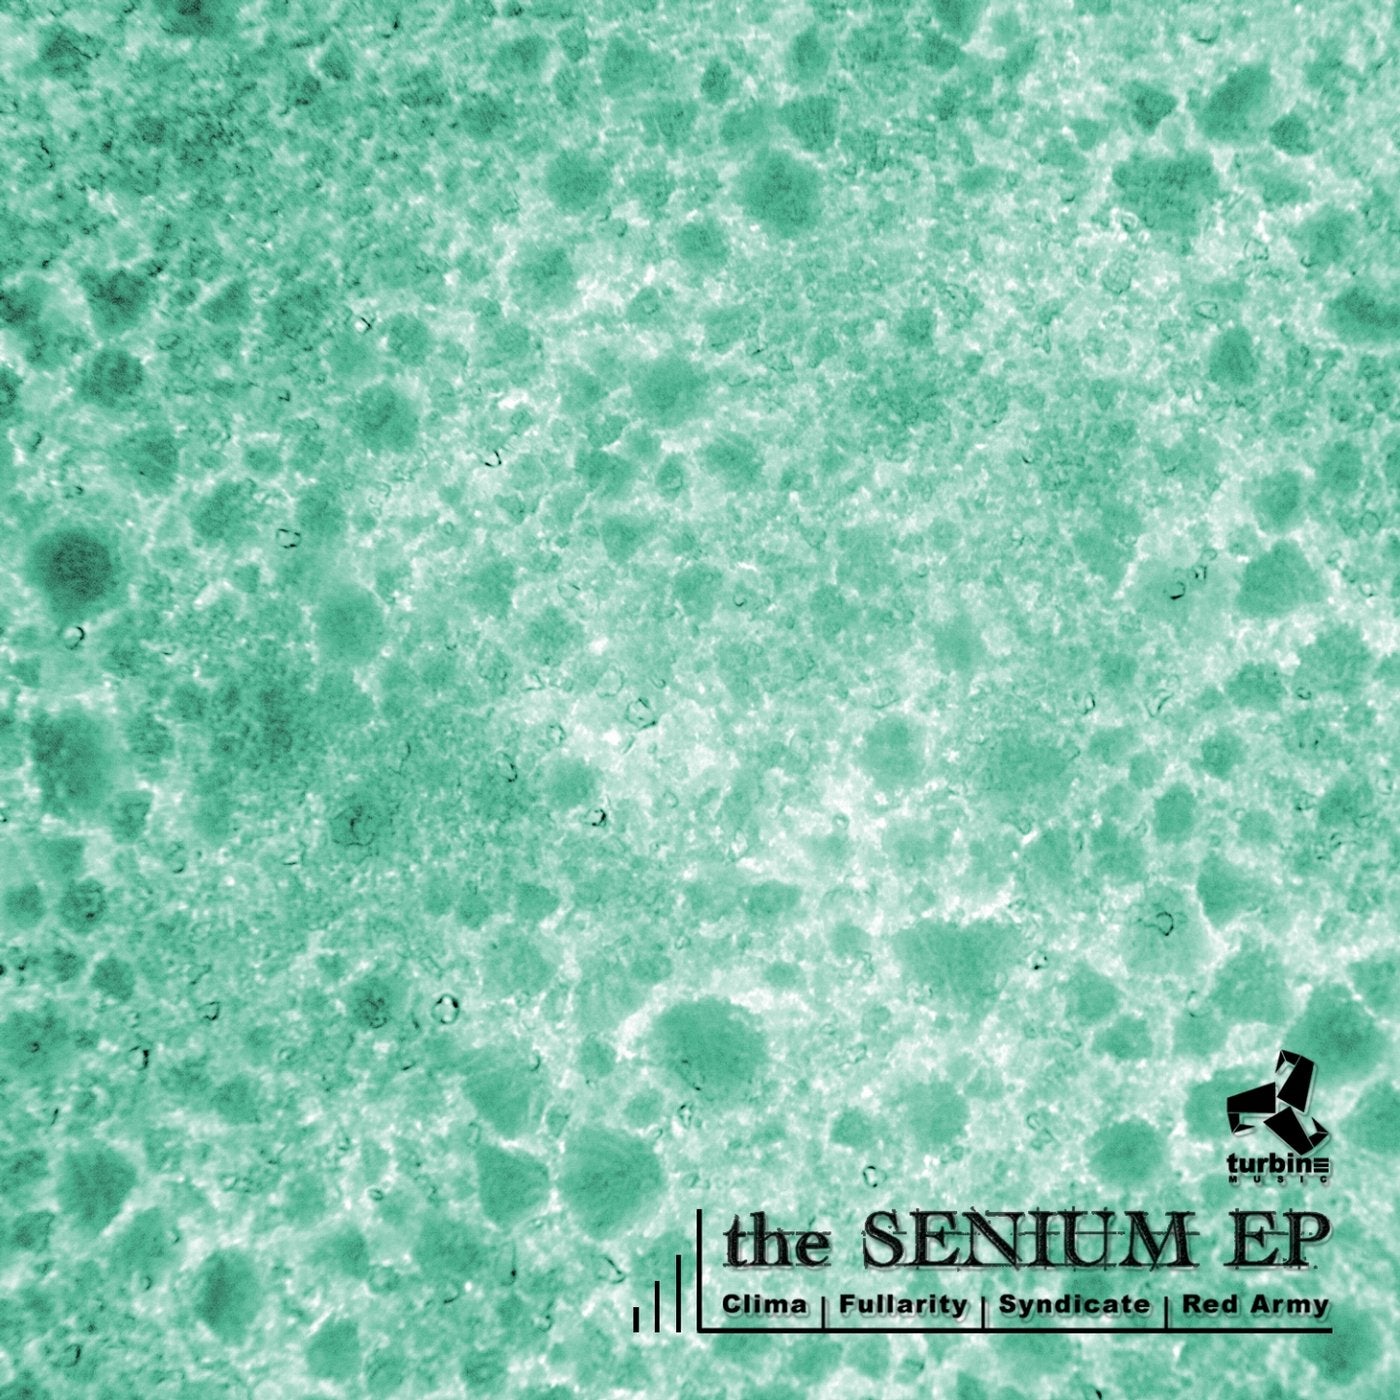 The Senium EP